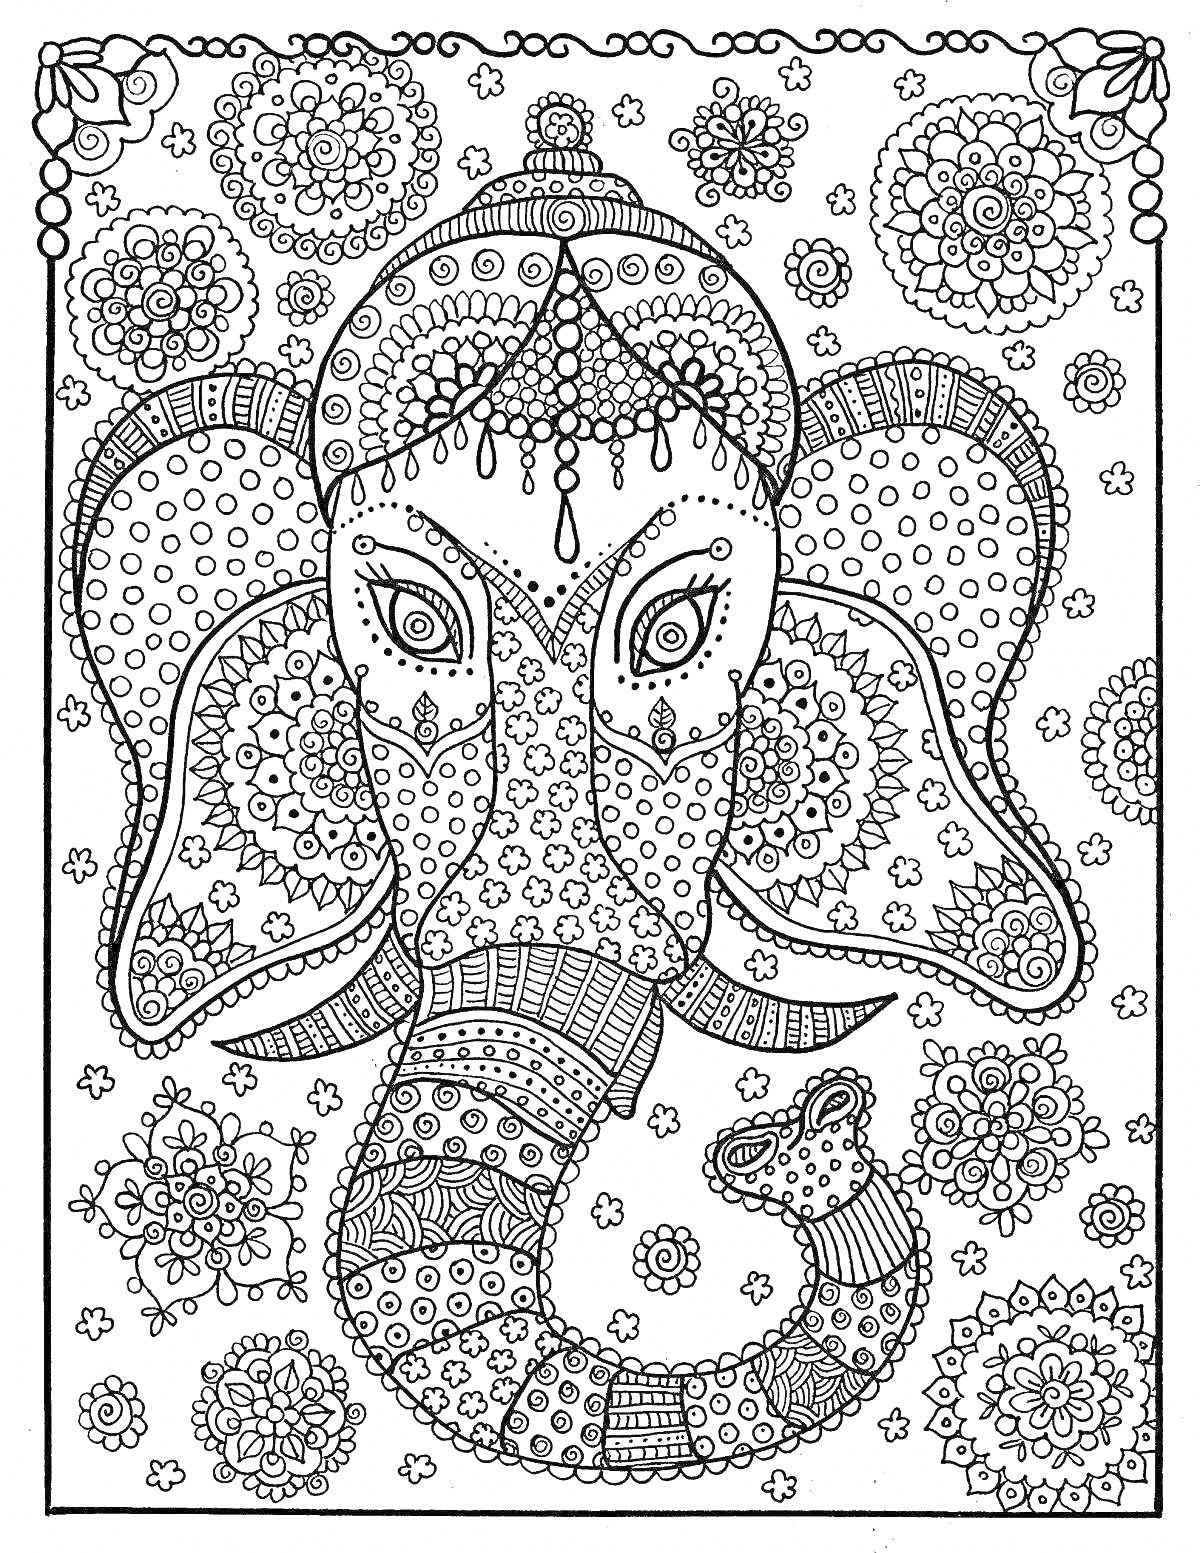 Слон в стилизированных узорах, окруженный мандалами и цветочными мотивами